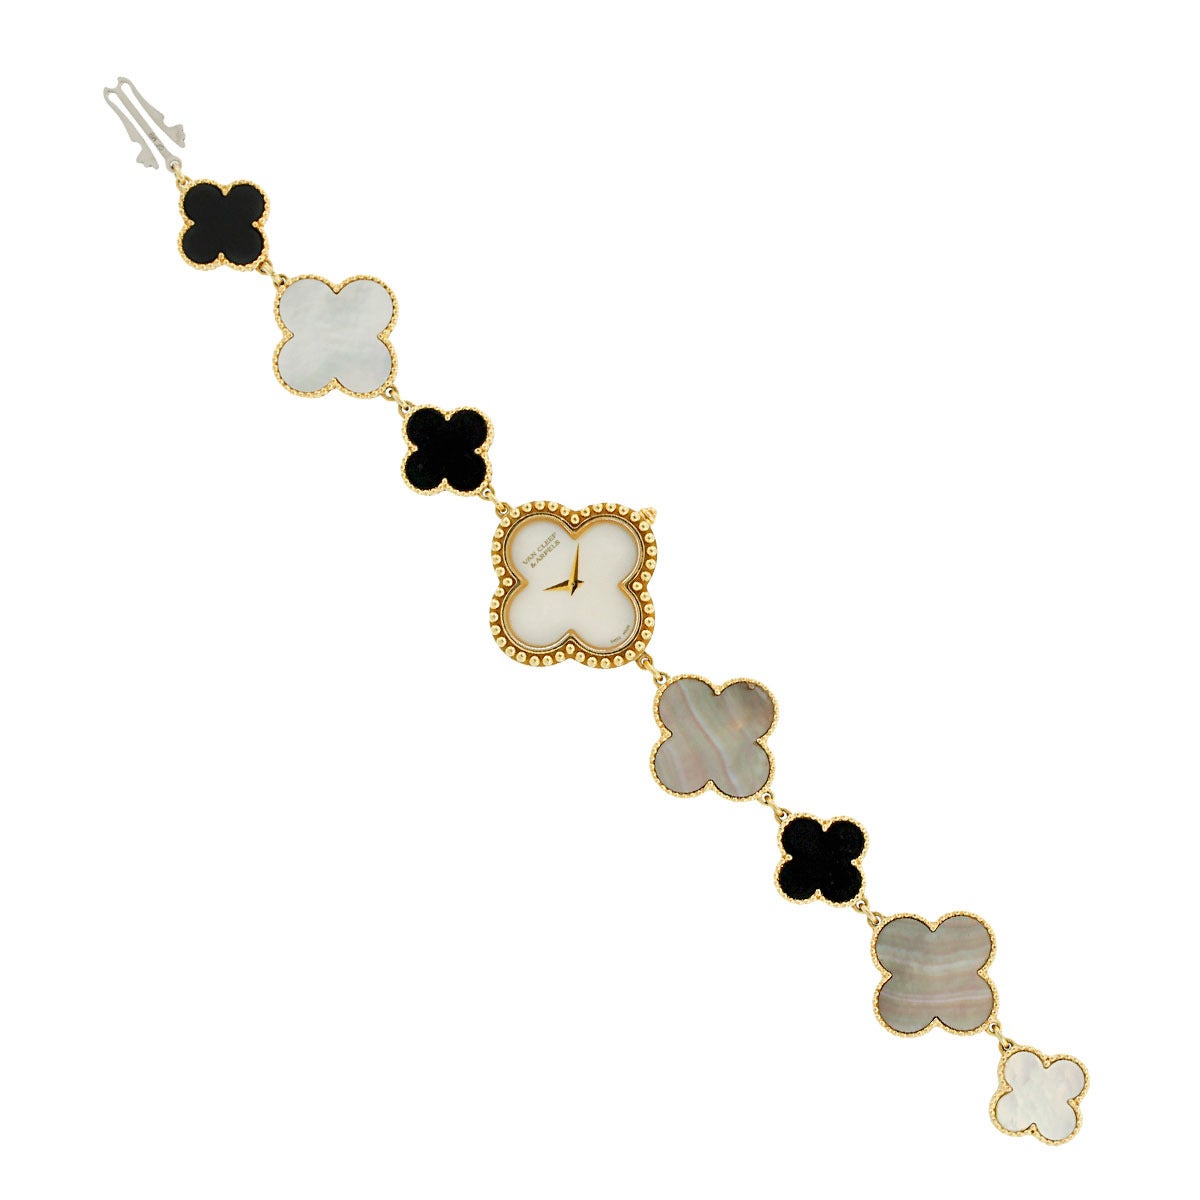 Designer: Van Cleef & Arpels
Model: Van Cleef & Arpels Vintage Alhambra Bracelet Watch
MPN: VCARO40P00
Serial Number: 